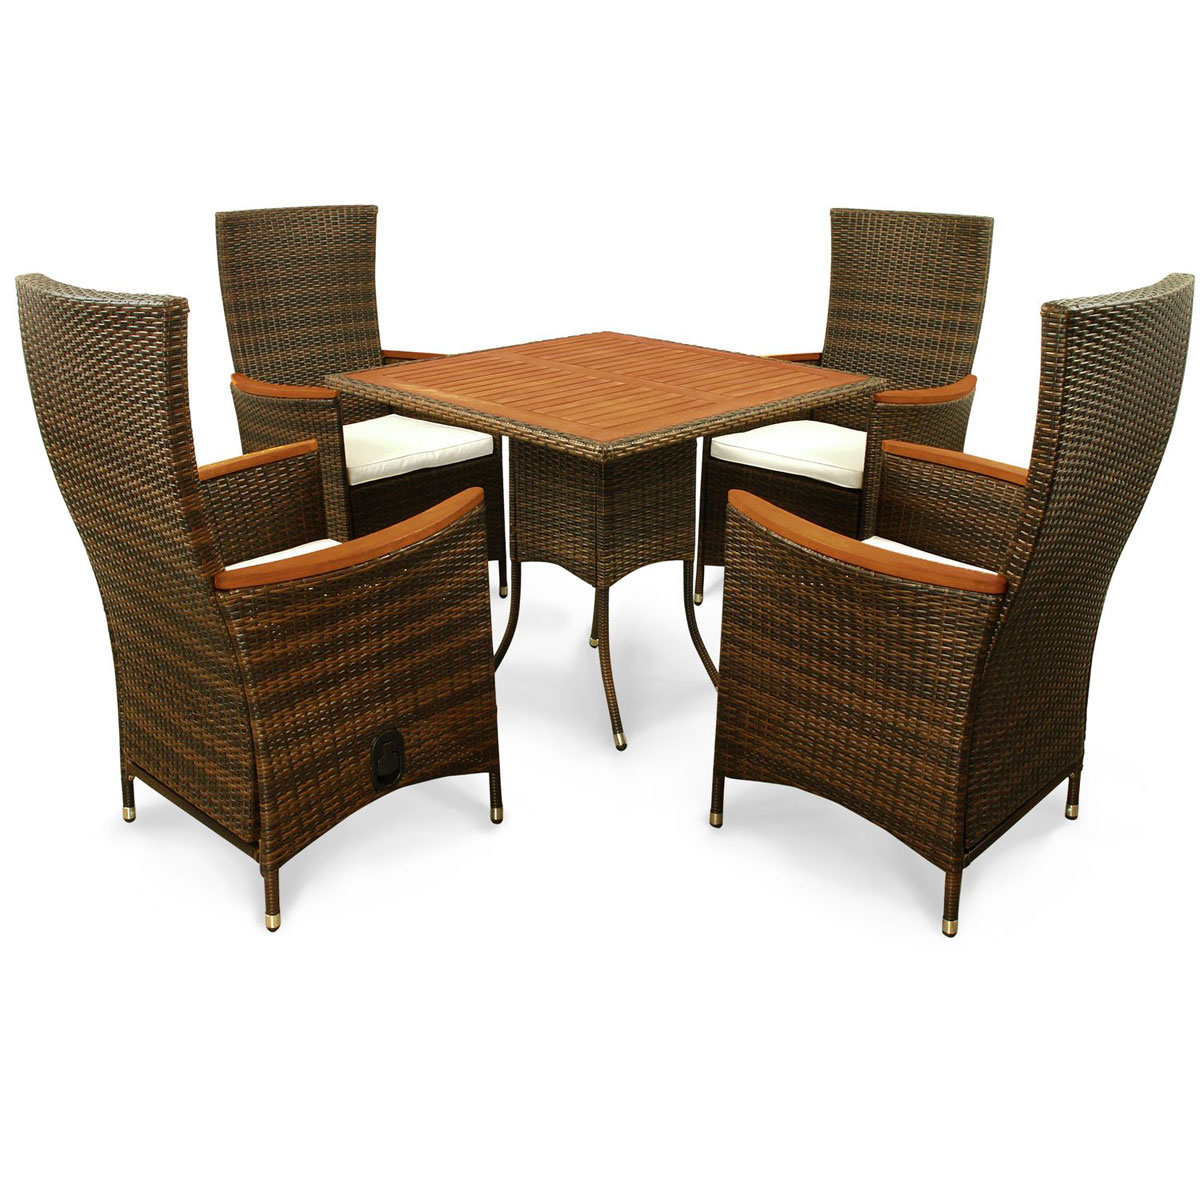 Indoba Gartenmöbel | 5-teilig Valencia Hochlehner | | Tisch Polyrattan 1 K000021805 4 Stühle braun | Set braun